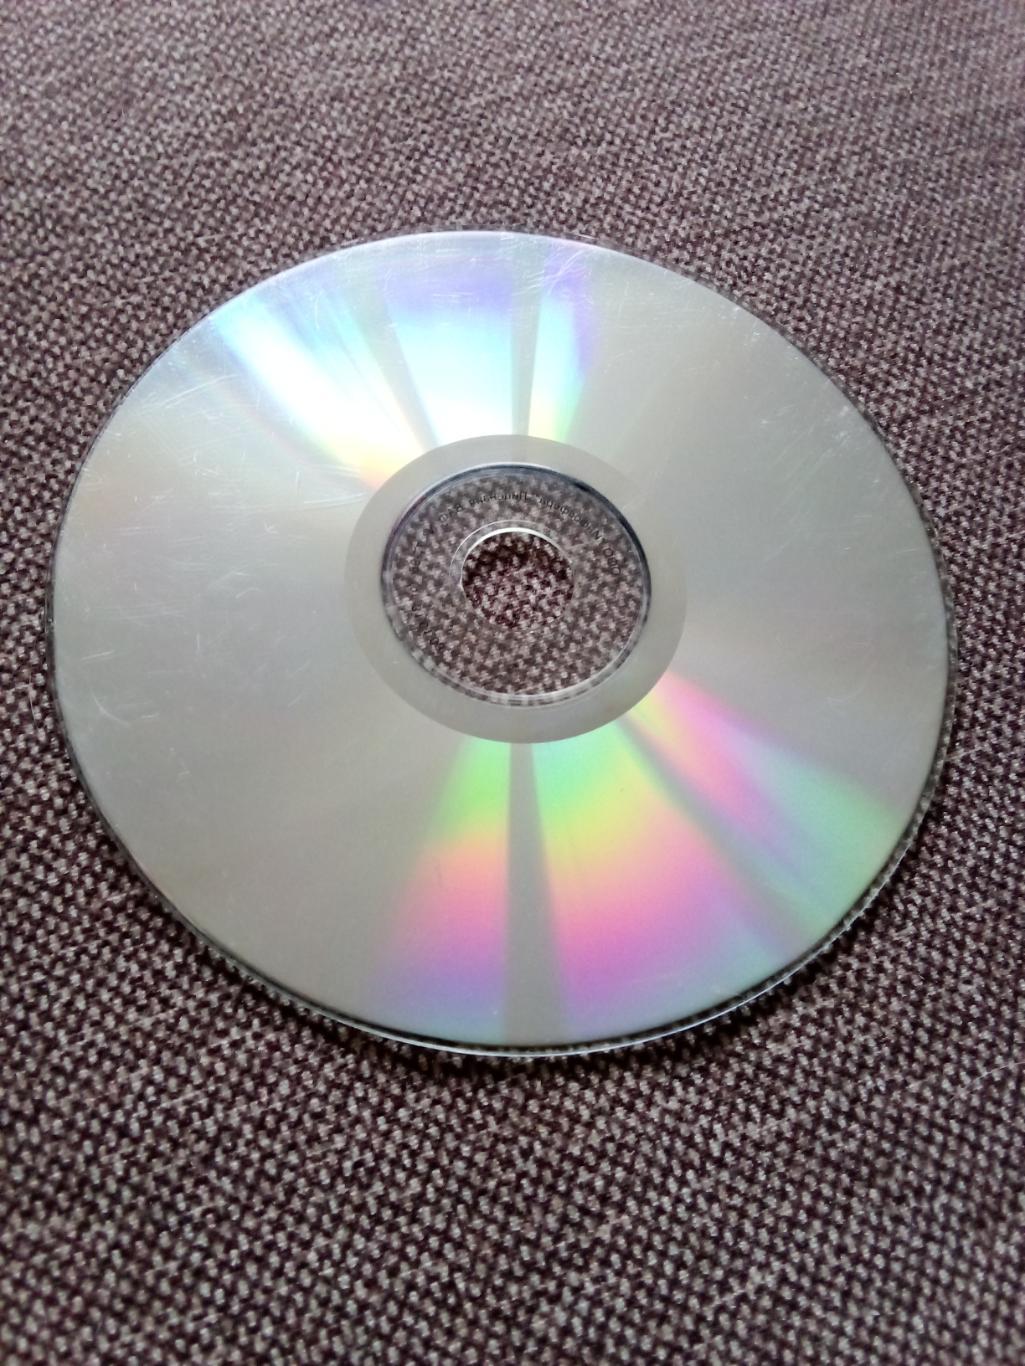 CD MP - 3 диск : группаUriah Heep1970 - 1982 гг. 14 альбомов (Рок-музыка) 5